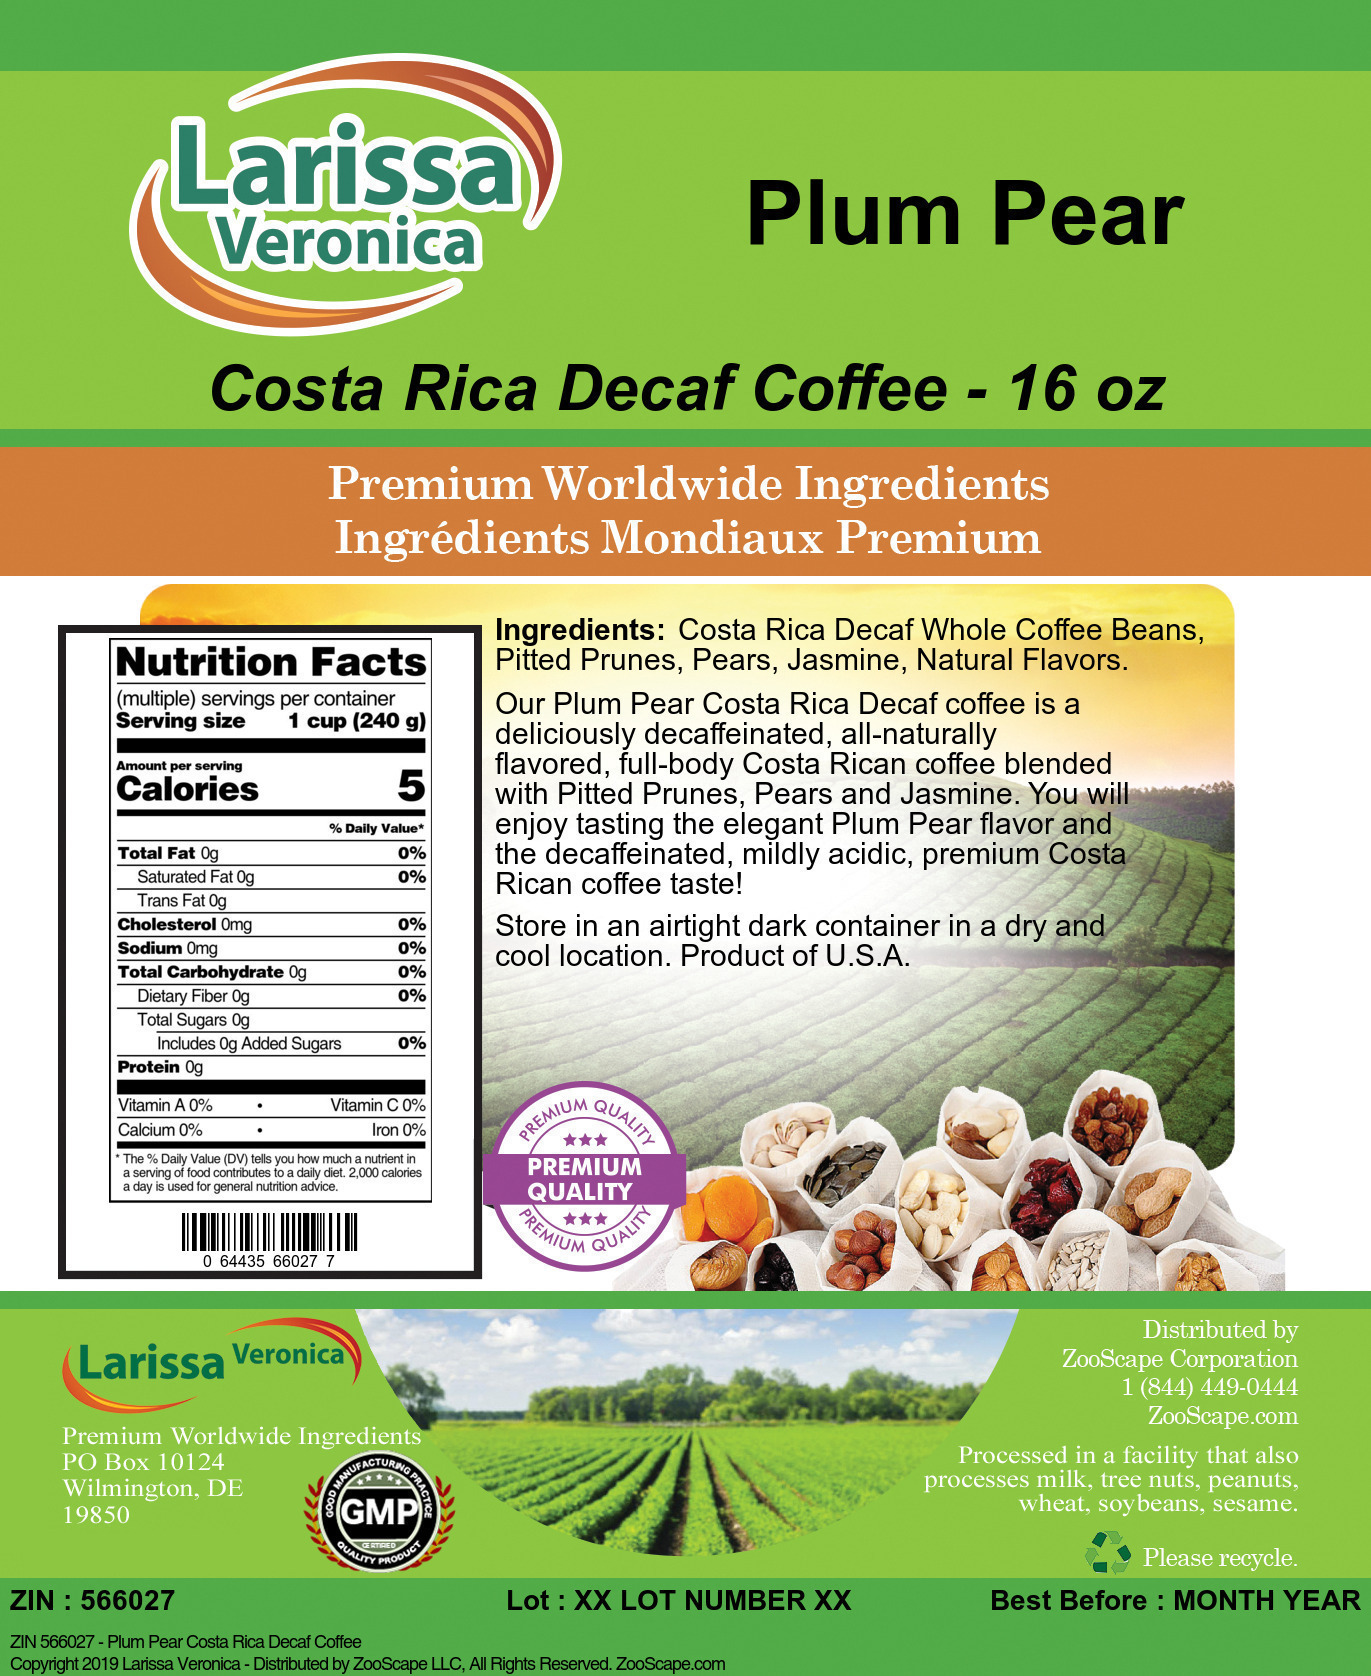 Plum Pear Costa Rica Decaf Coffee - Label